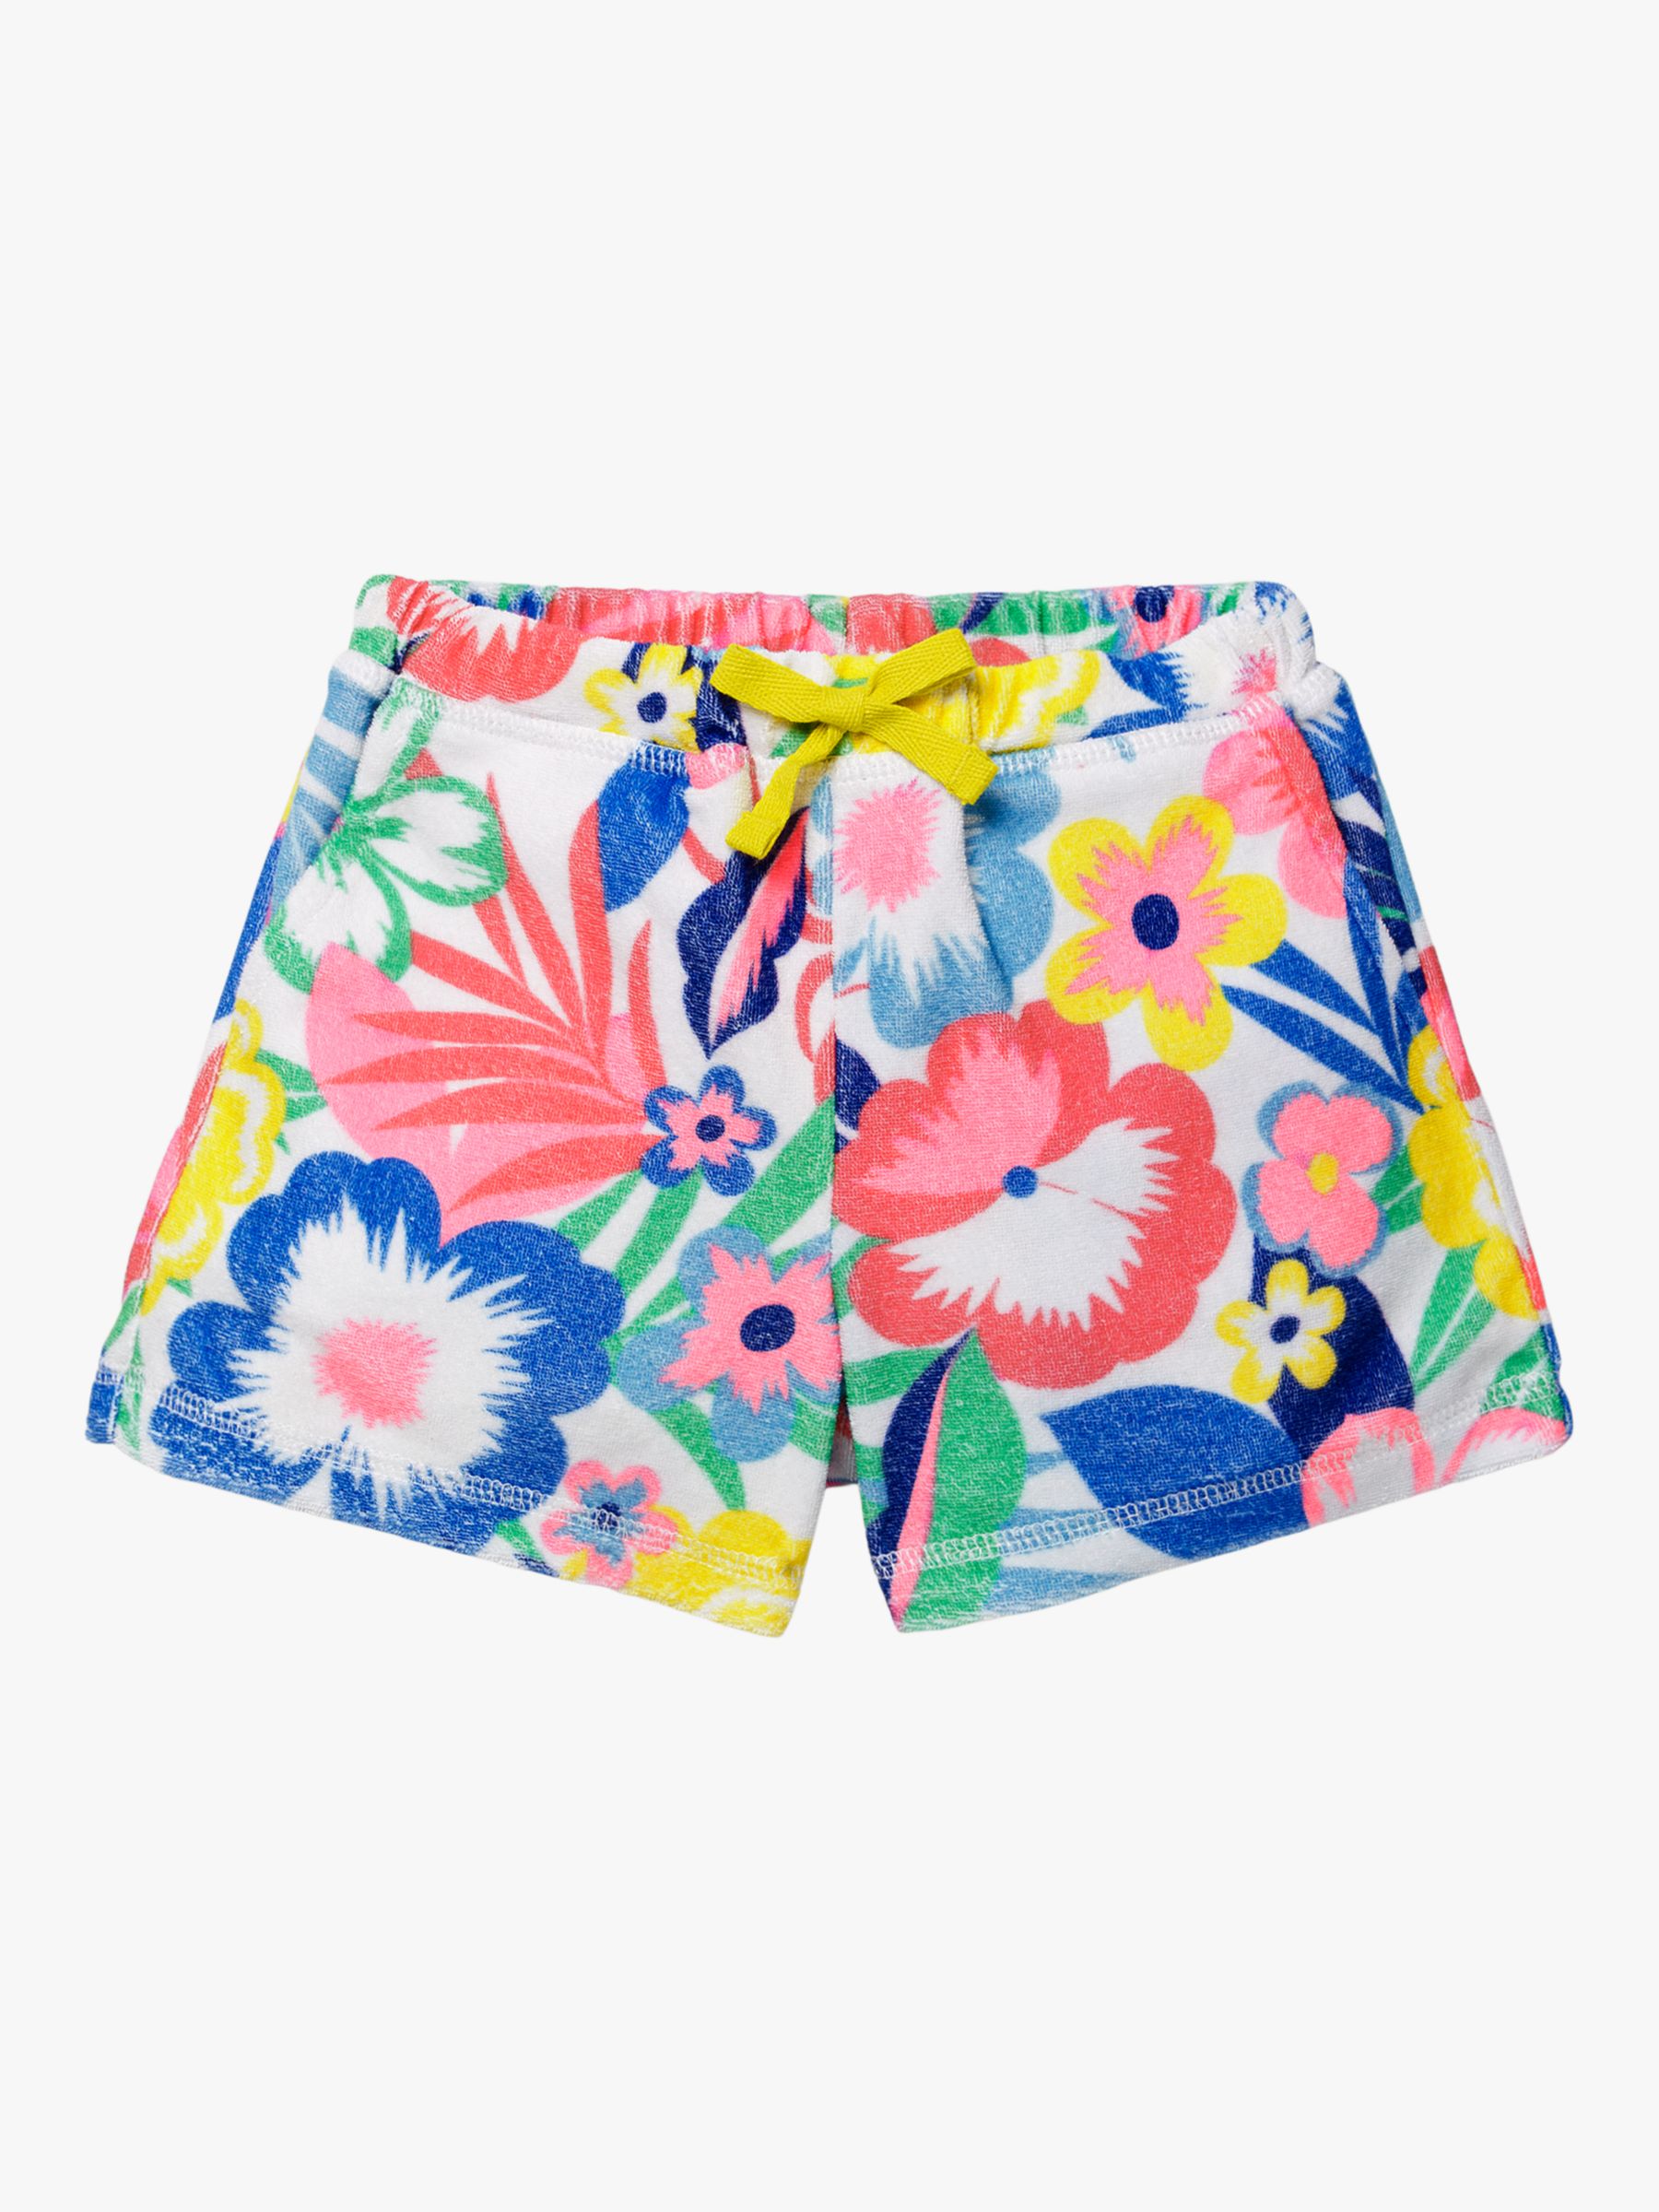 Mini Boden Girls' Towelling Flower Shorts, Multi